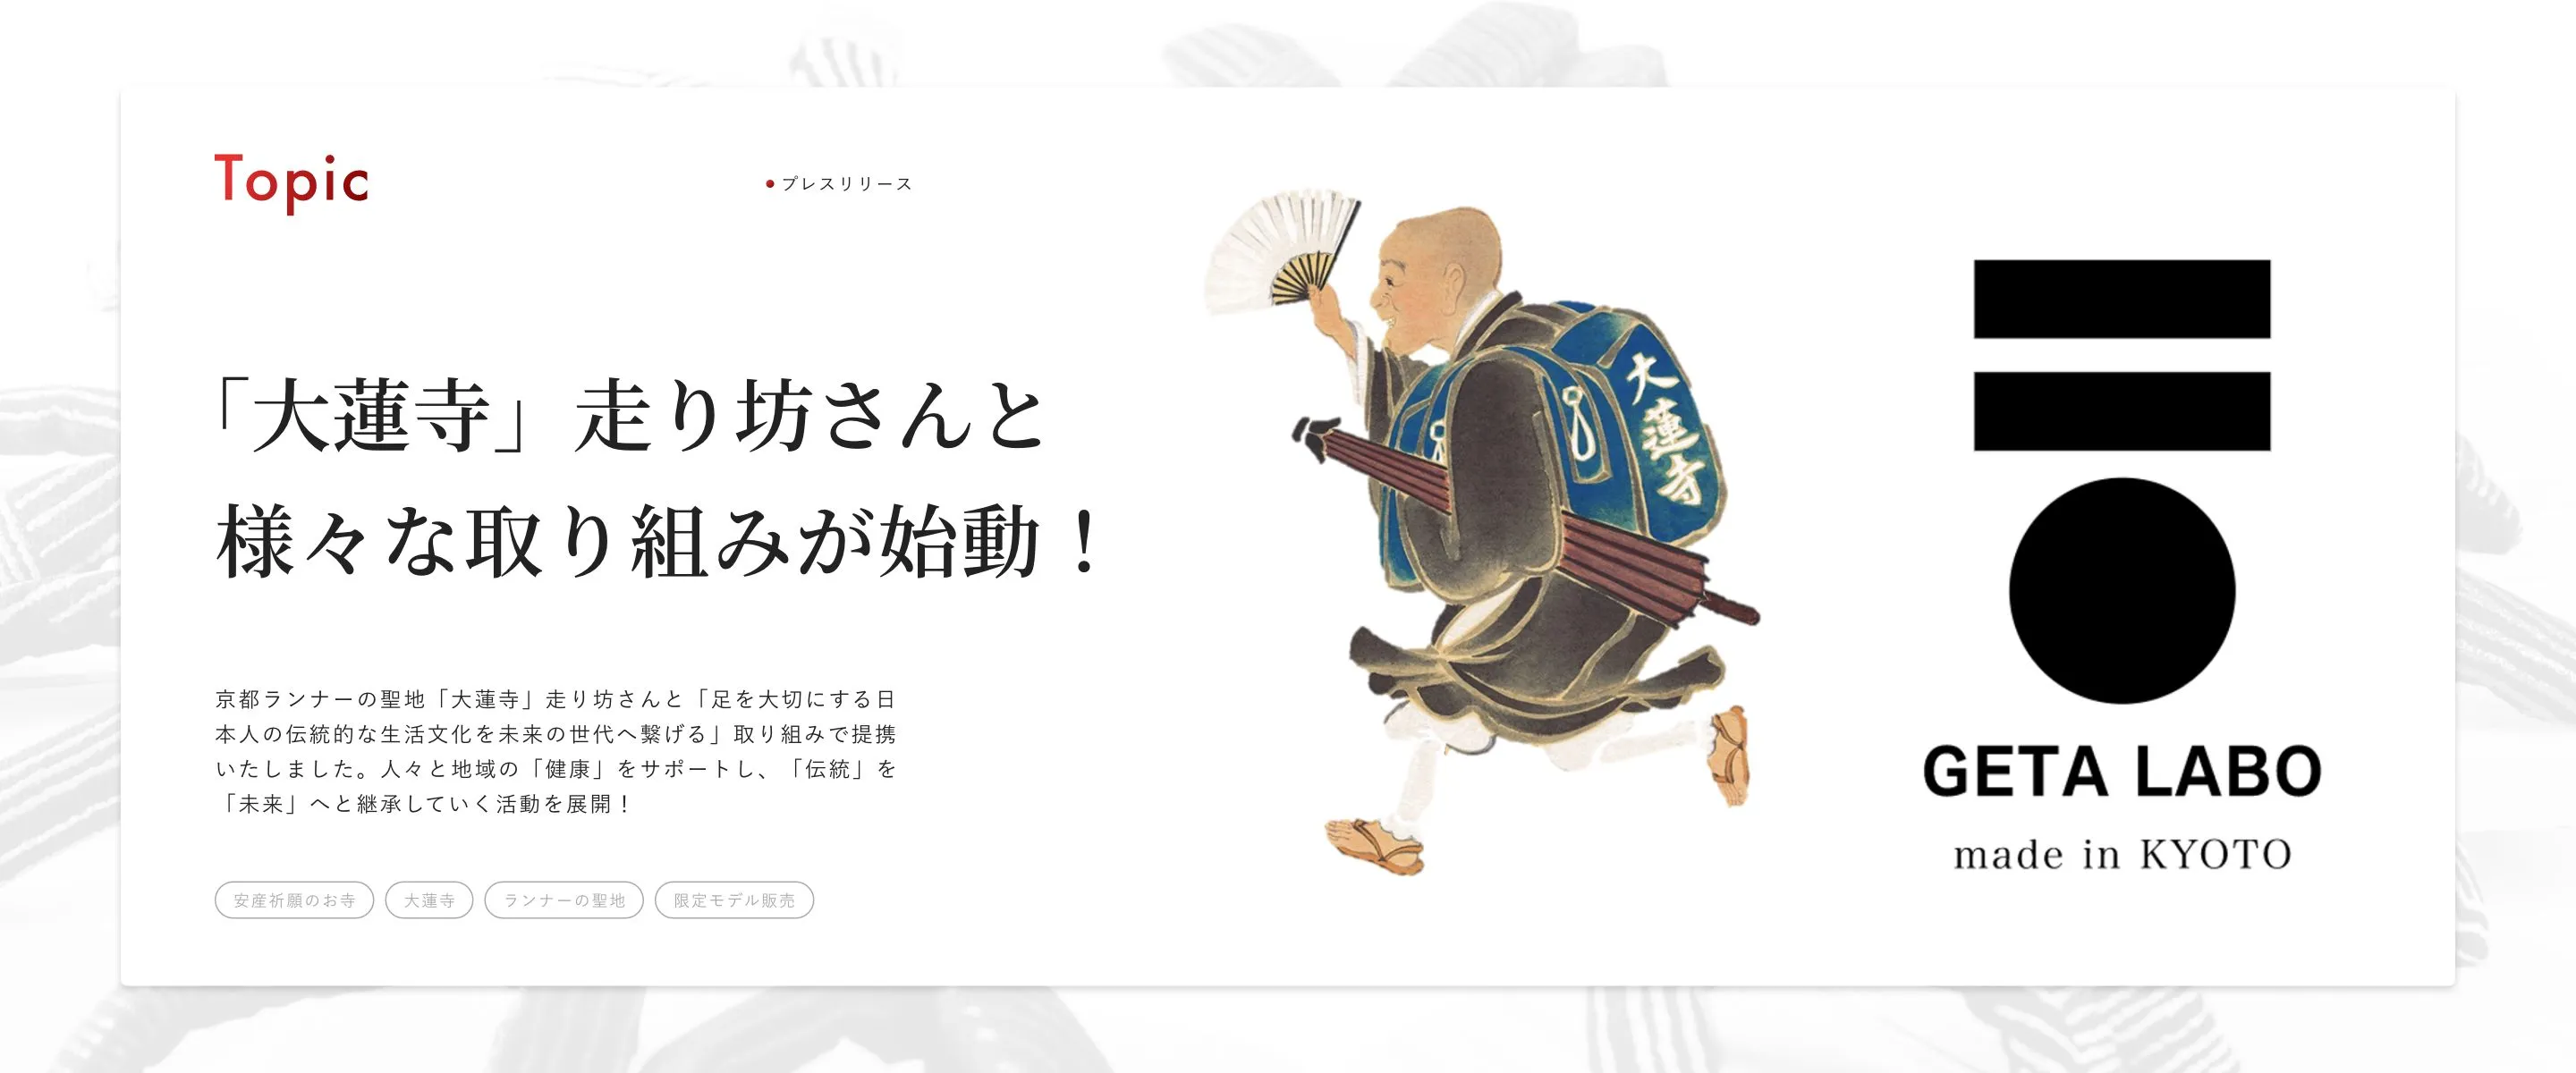 京都ランナーの聖地「大蓮寺」走り坊さんと「足を大切にする日本人の伝統的な生活文化を未来の世代へ繋げる」取り組みで提携いたしました。